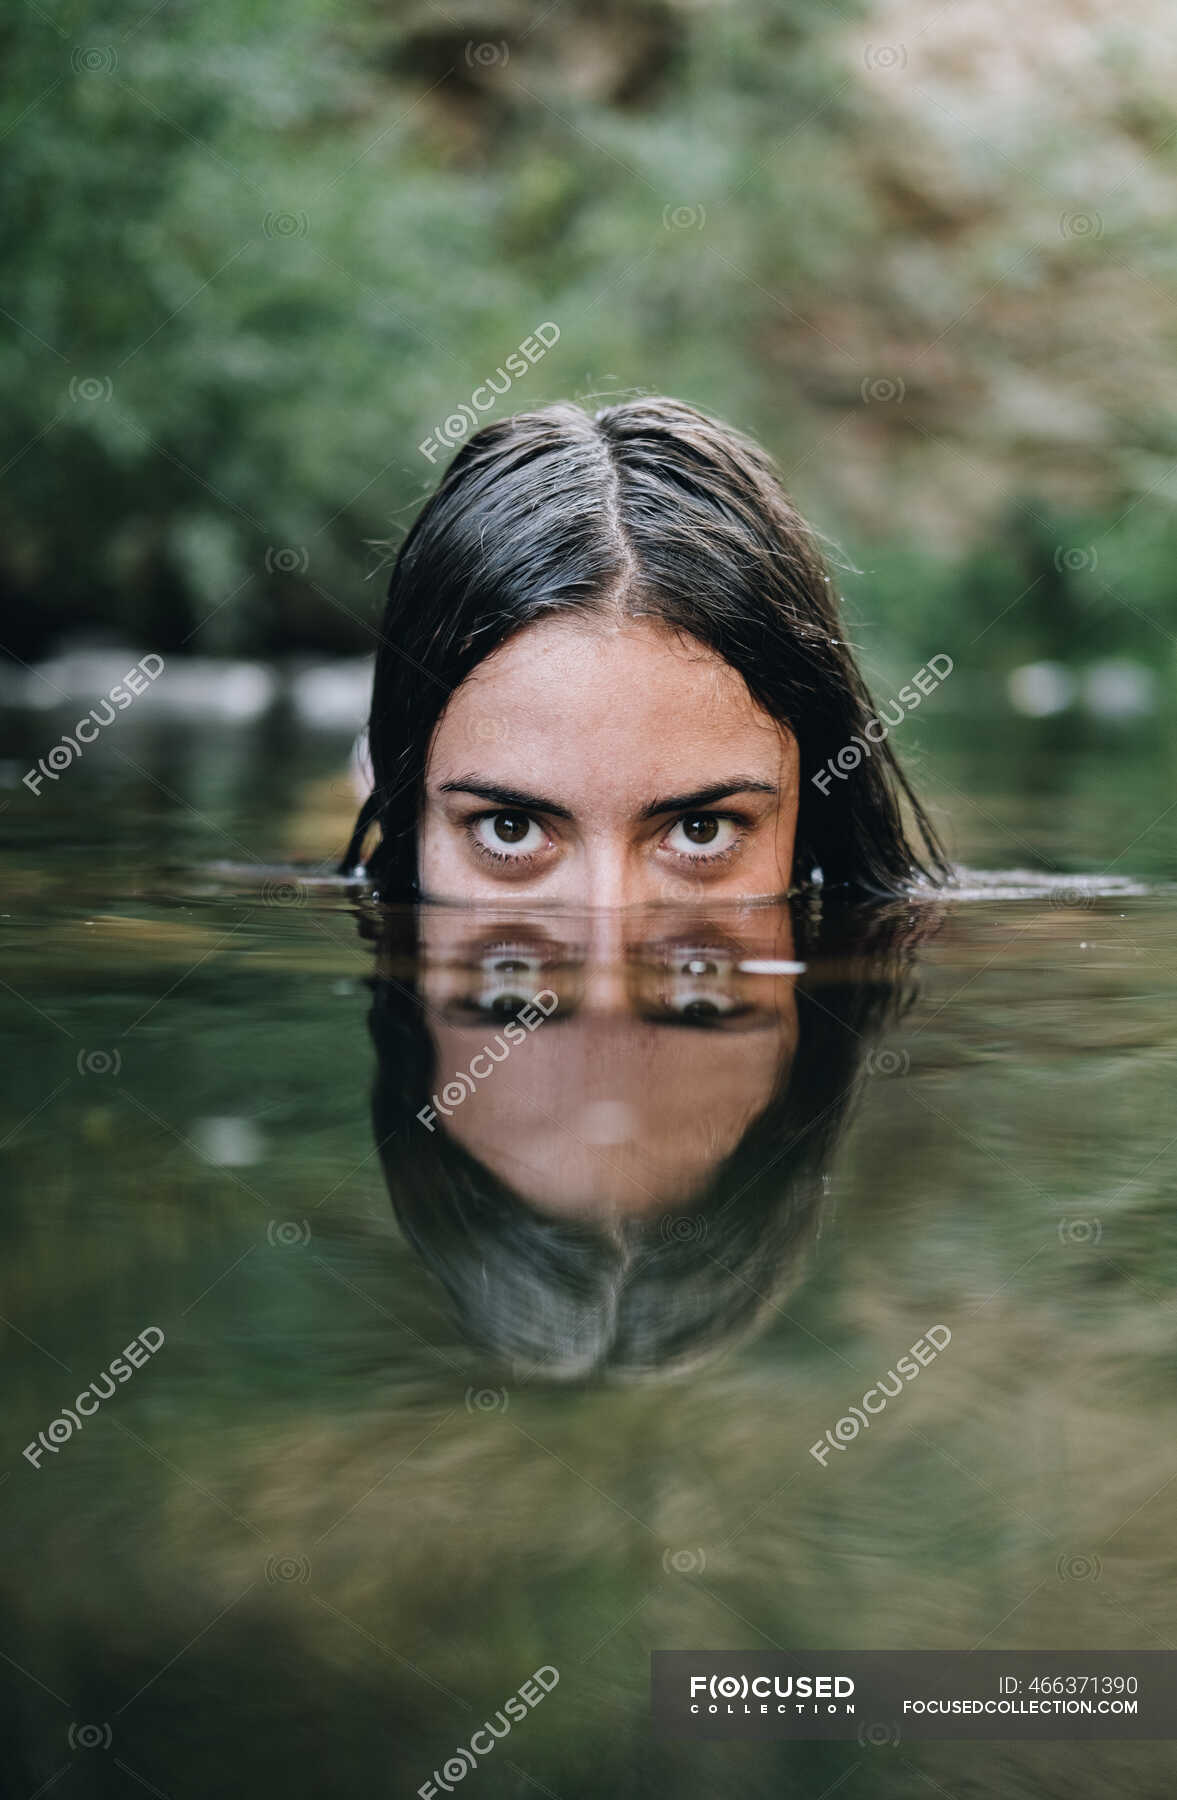 Молодая девушка плавает в реке — Праздник, Хобби - Stock Photo | #466371390